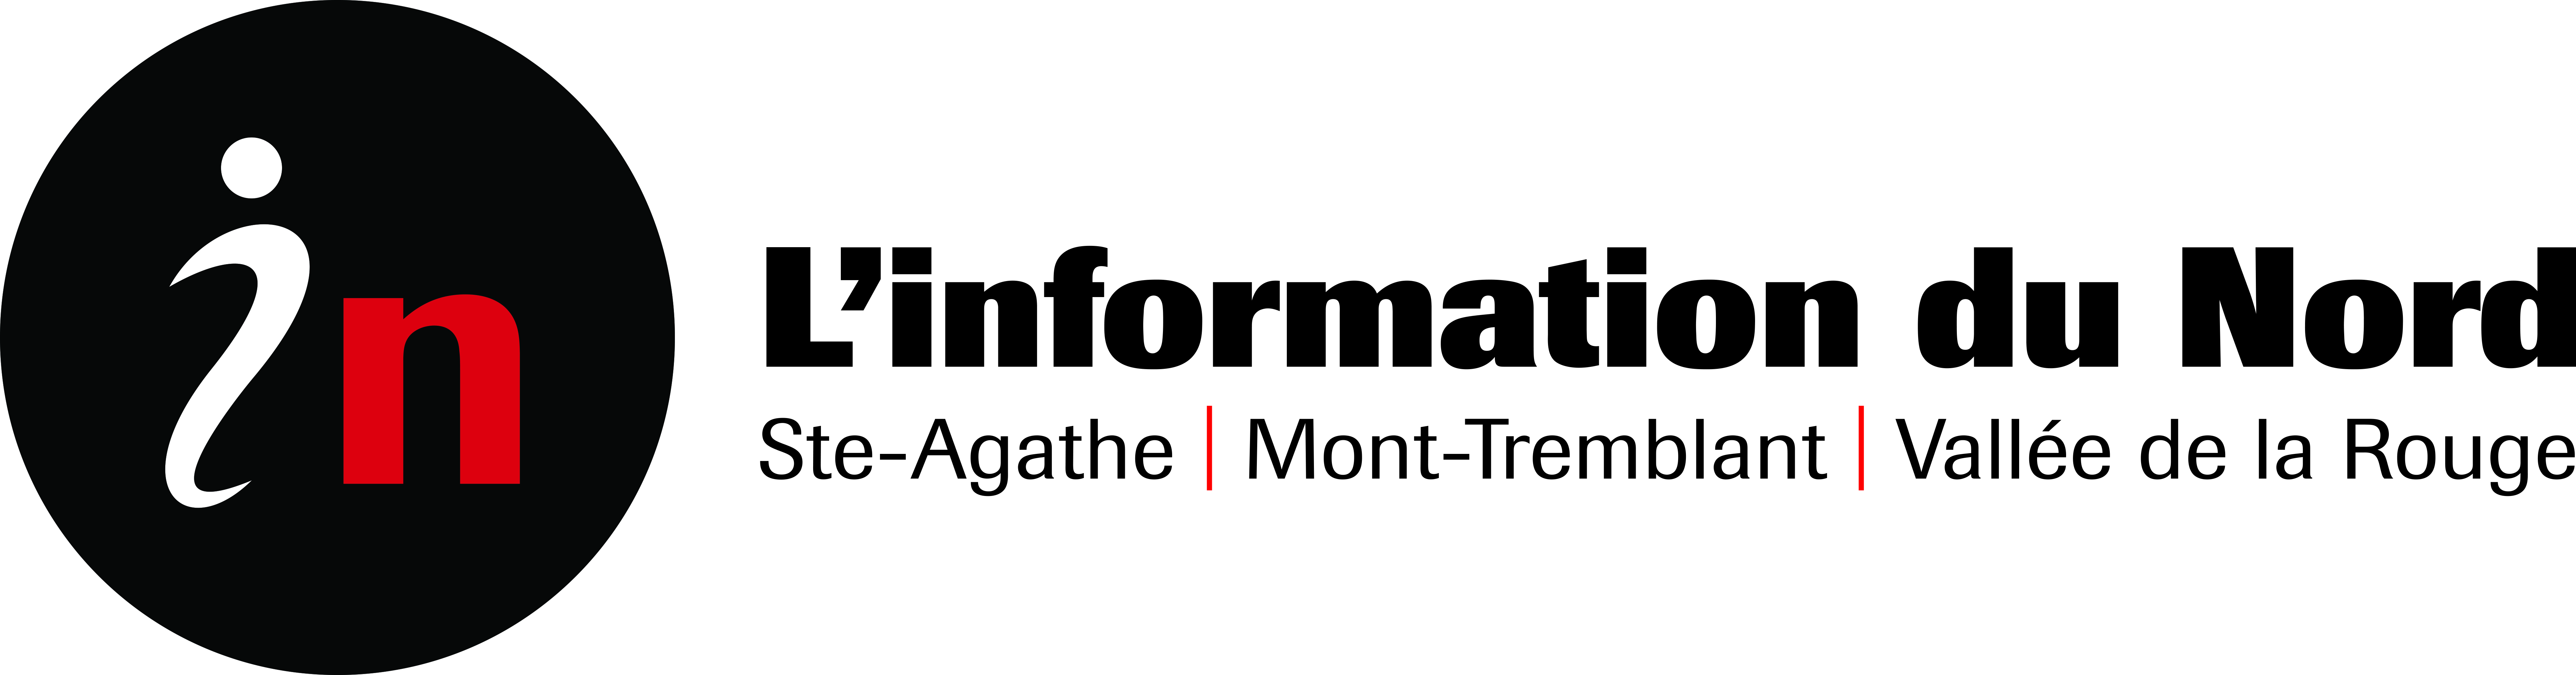 information_du_nord_logo